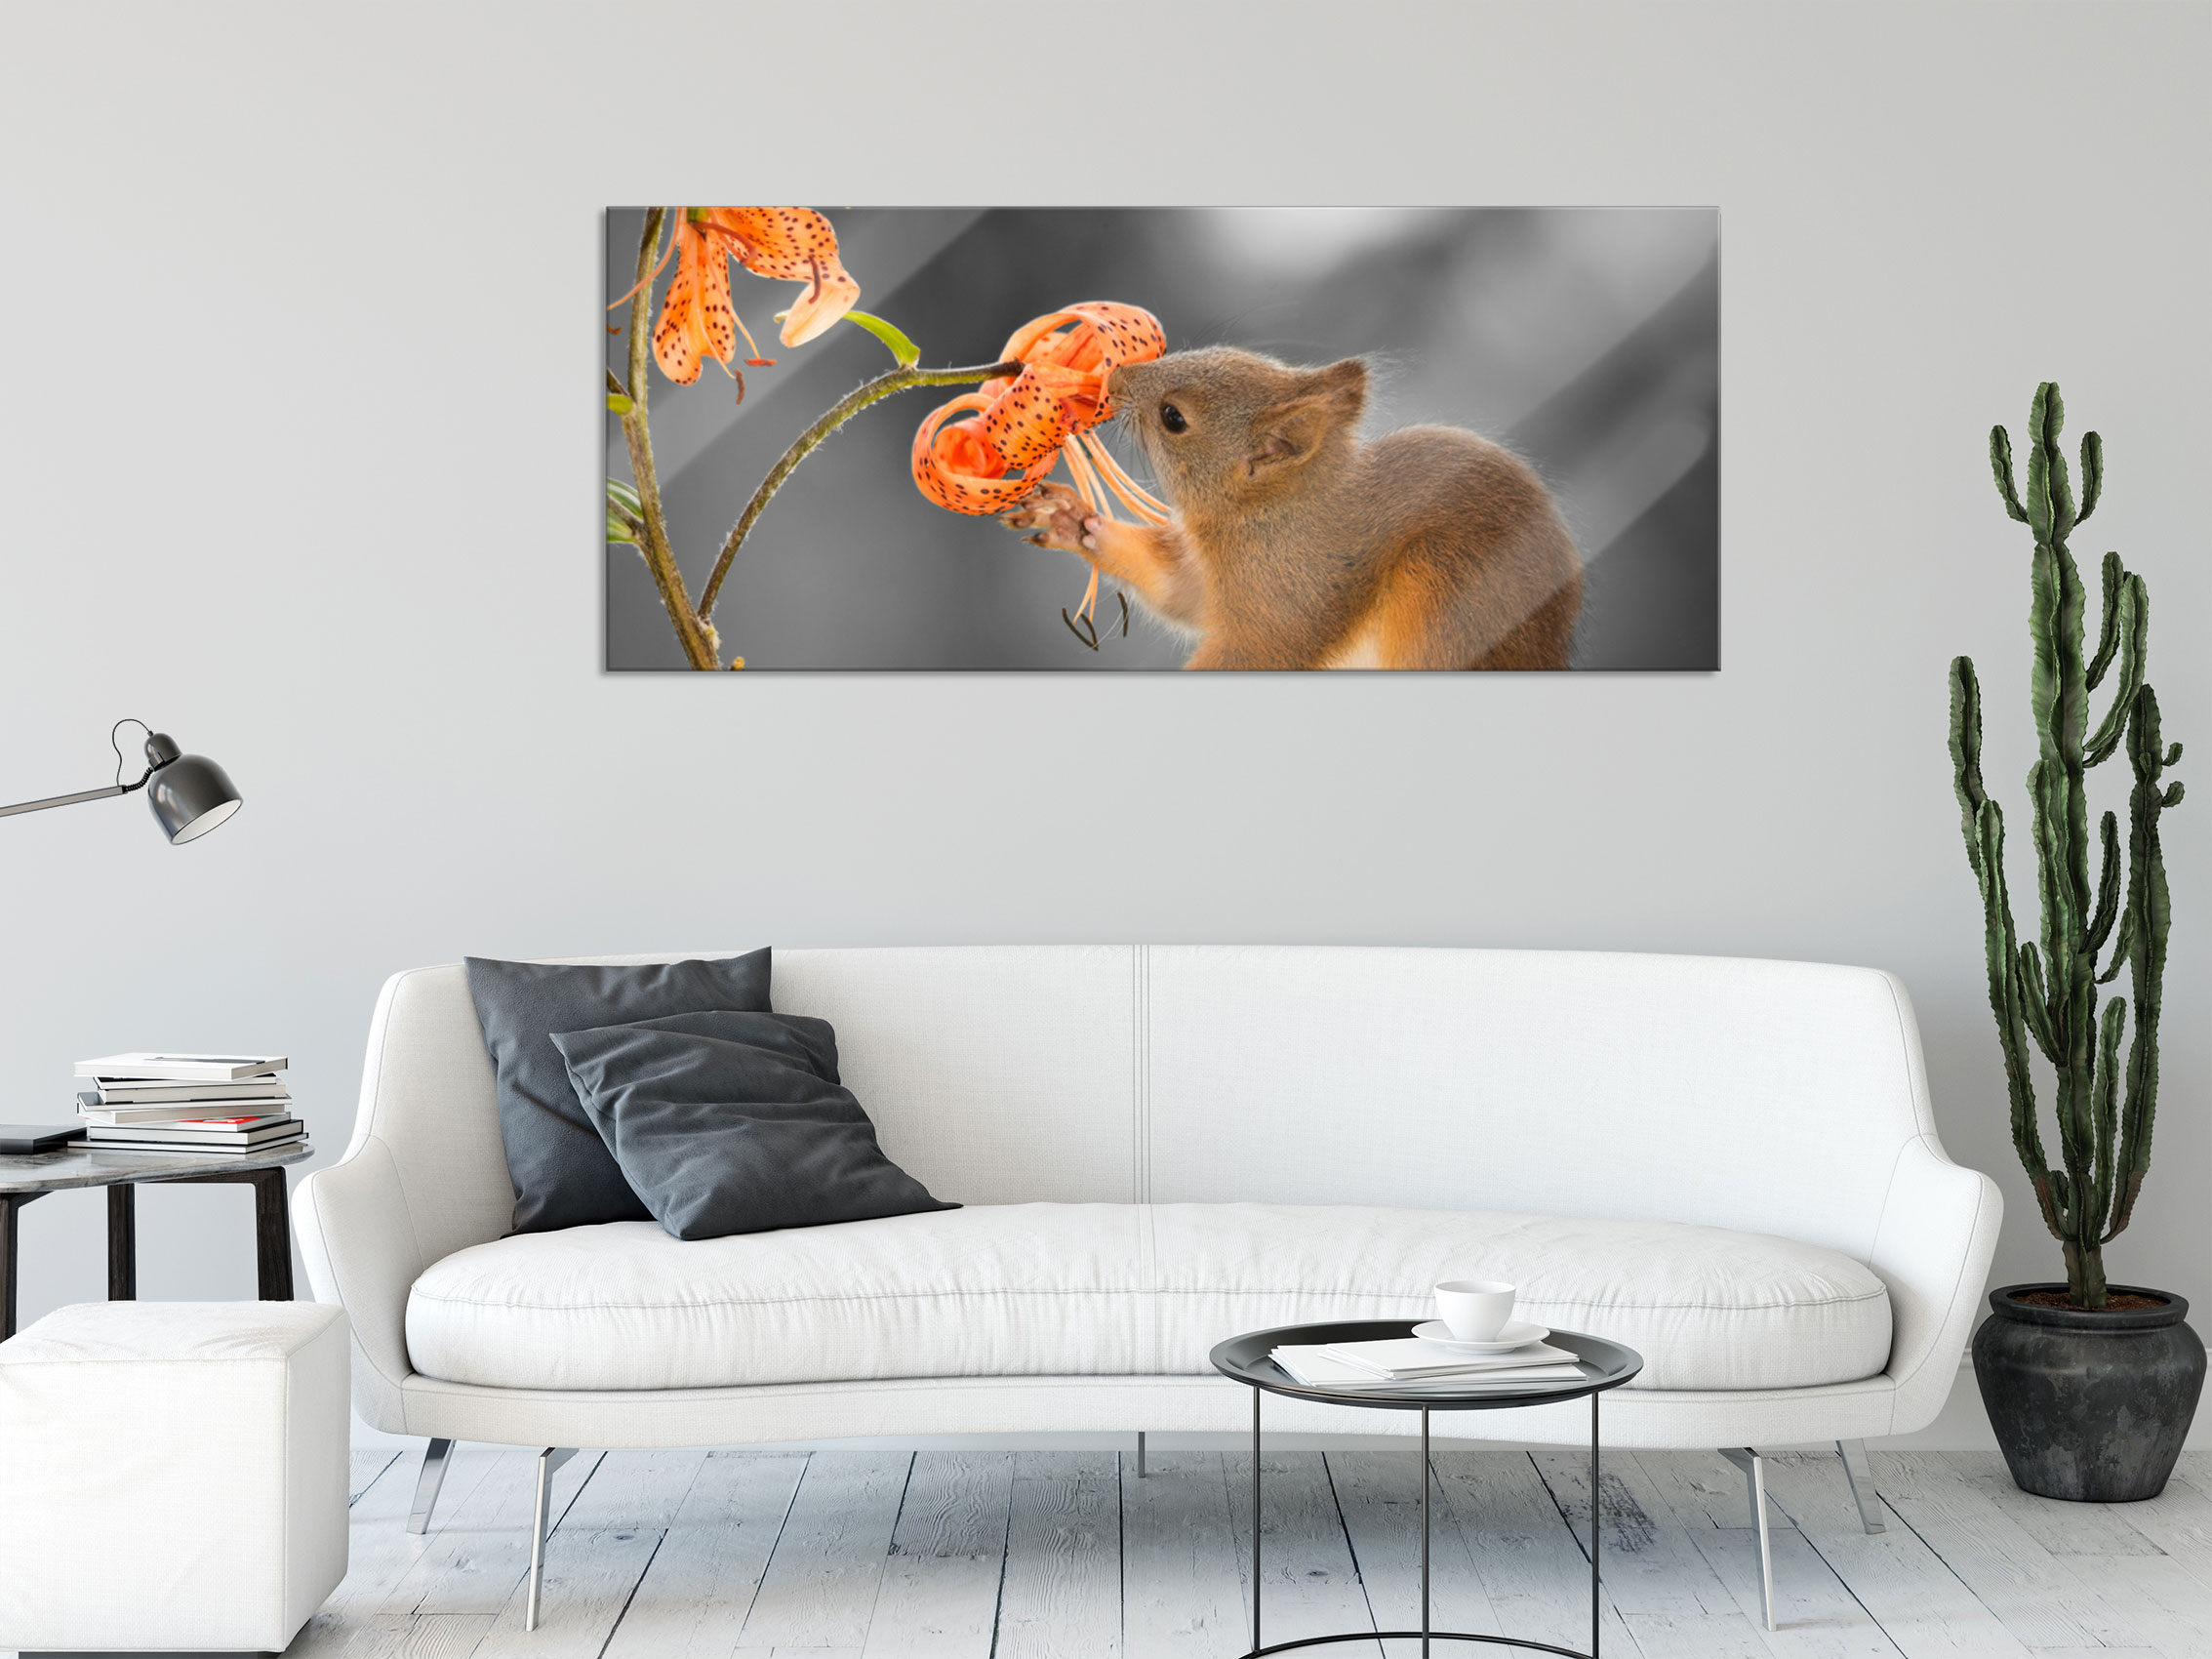 Glasbild, einer Wandhalterung Panorama Eichhörnchen an | eBay inkl. Blume riecht